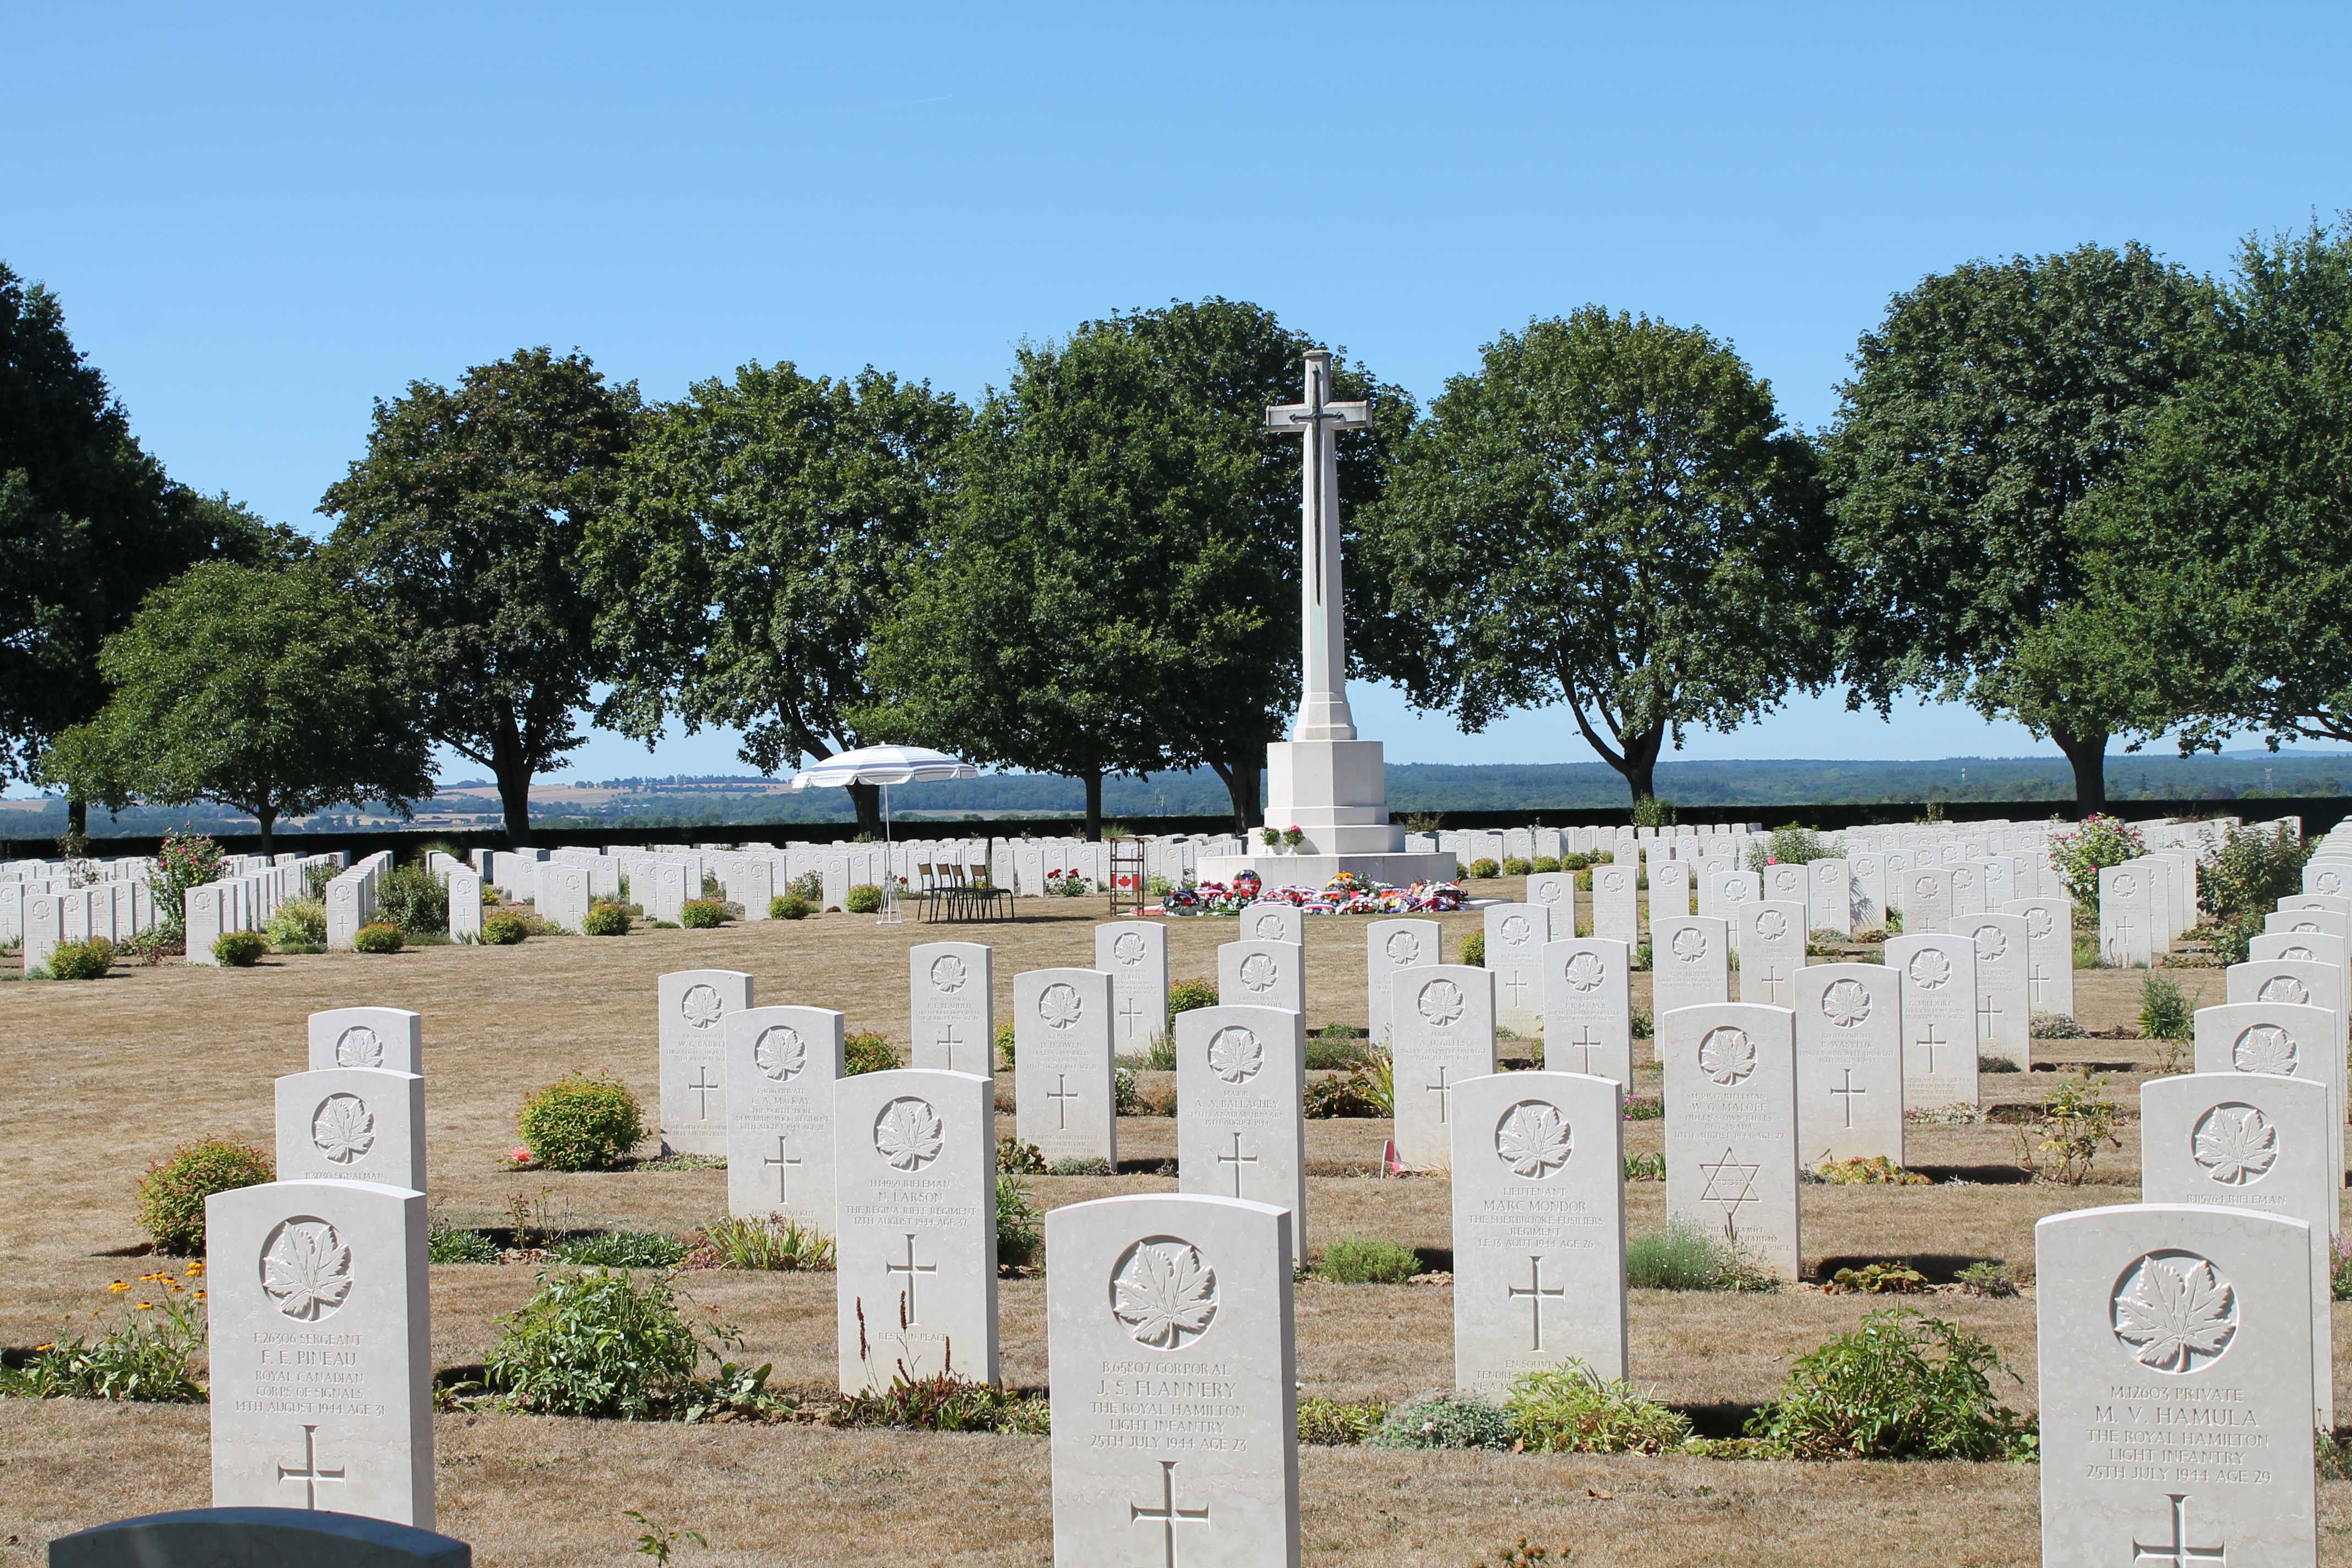 Photographie en couleur – Vue d’un cimetière militaire où se succèdent des pierres tombales blanches uniformes. L’emblématique croix de marbre des sépultures de guerre du Commonwealth est visible au centre. Le podium d’une cérémonie passée est resté.